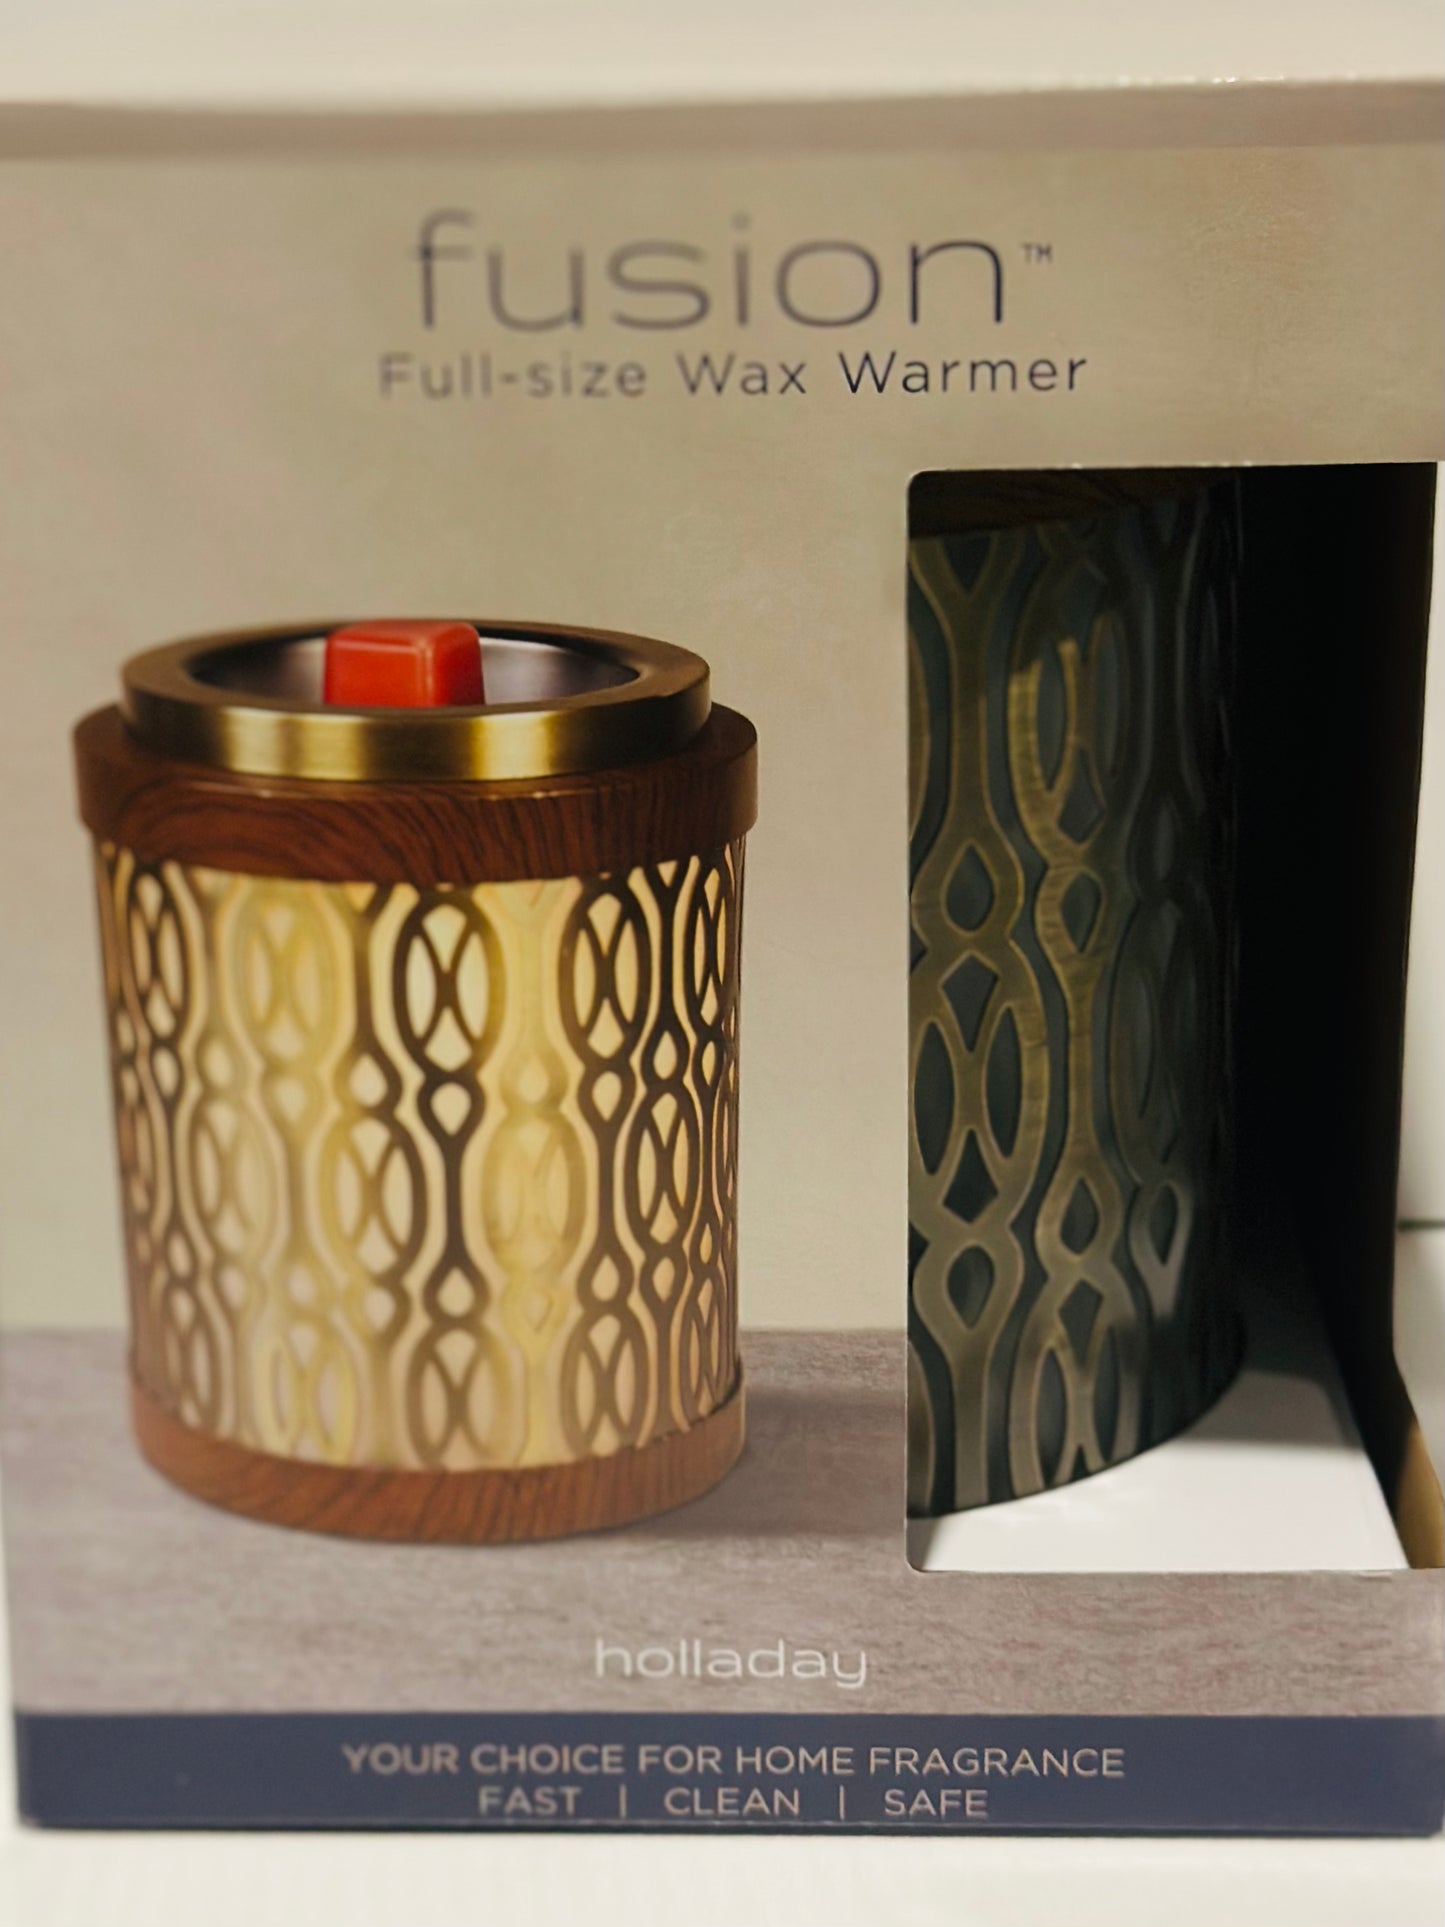 Fusion (Holladay) Wax Warmer